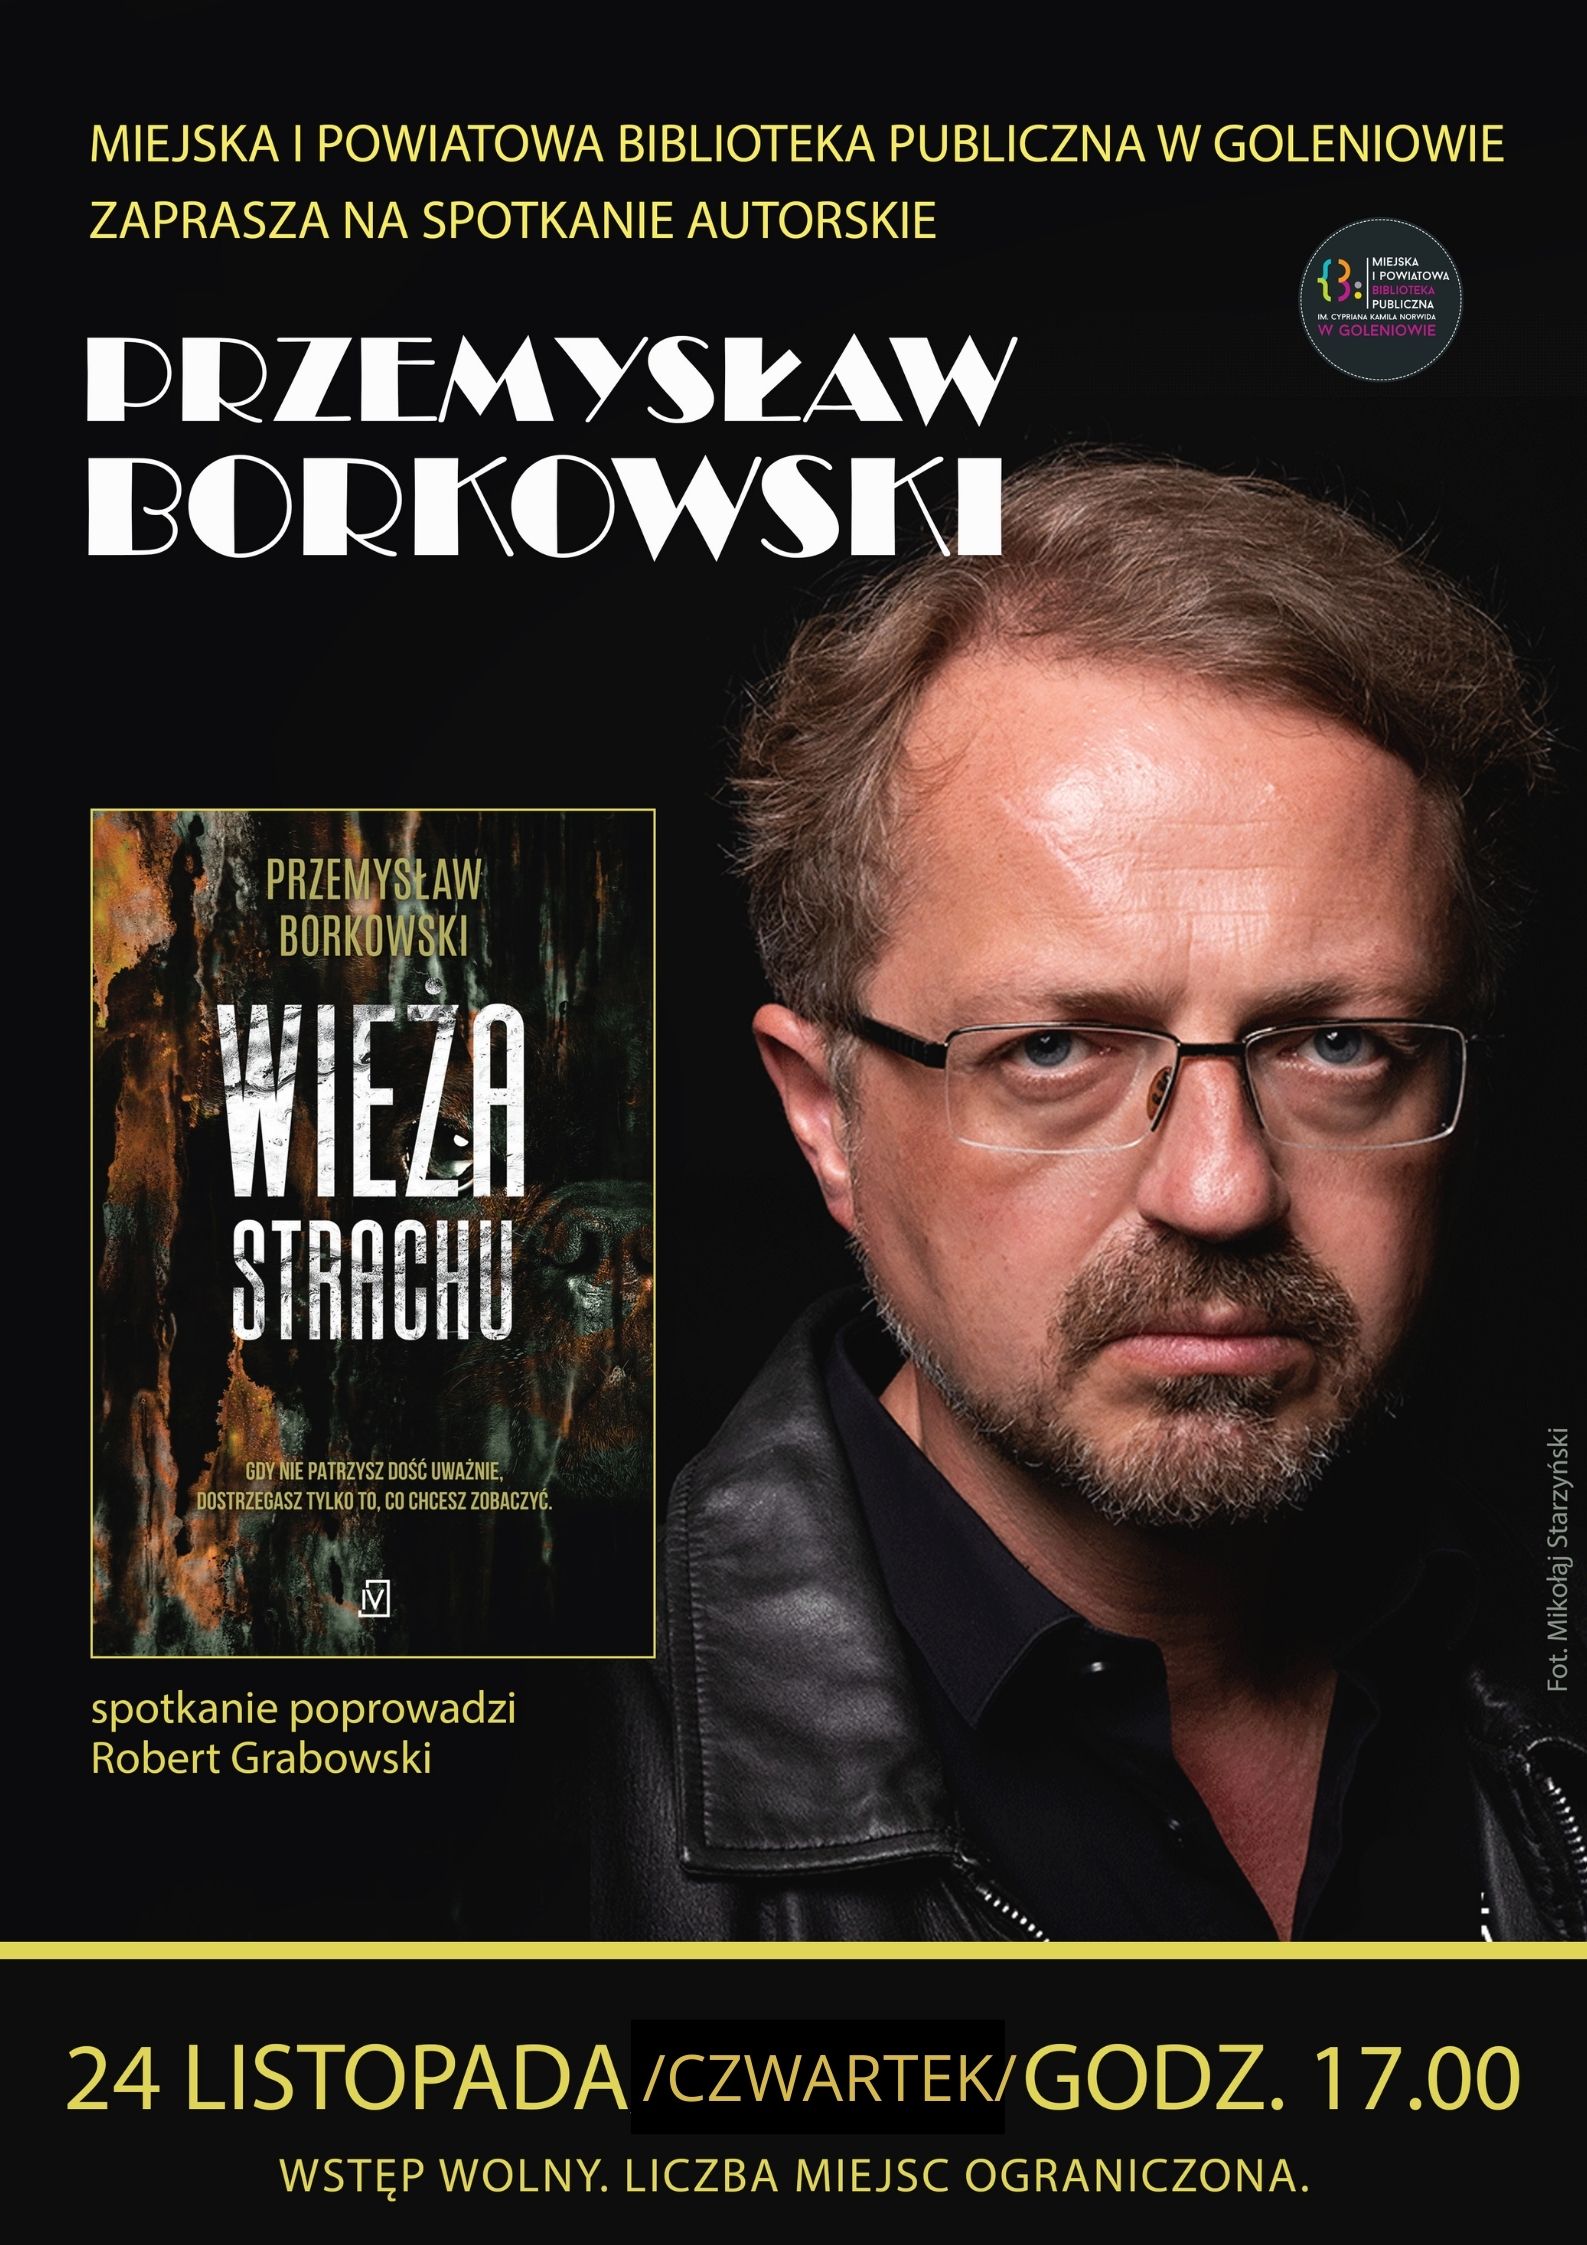 Spotkanie autorskie z Przemysławem Borkowskim!